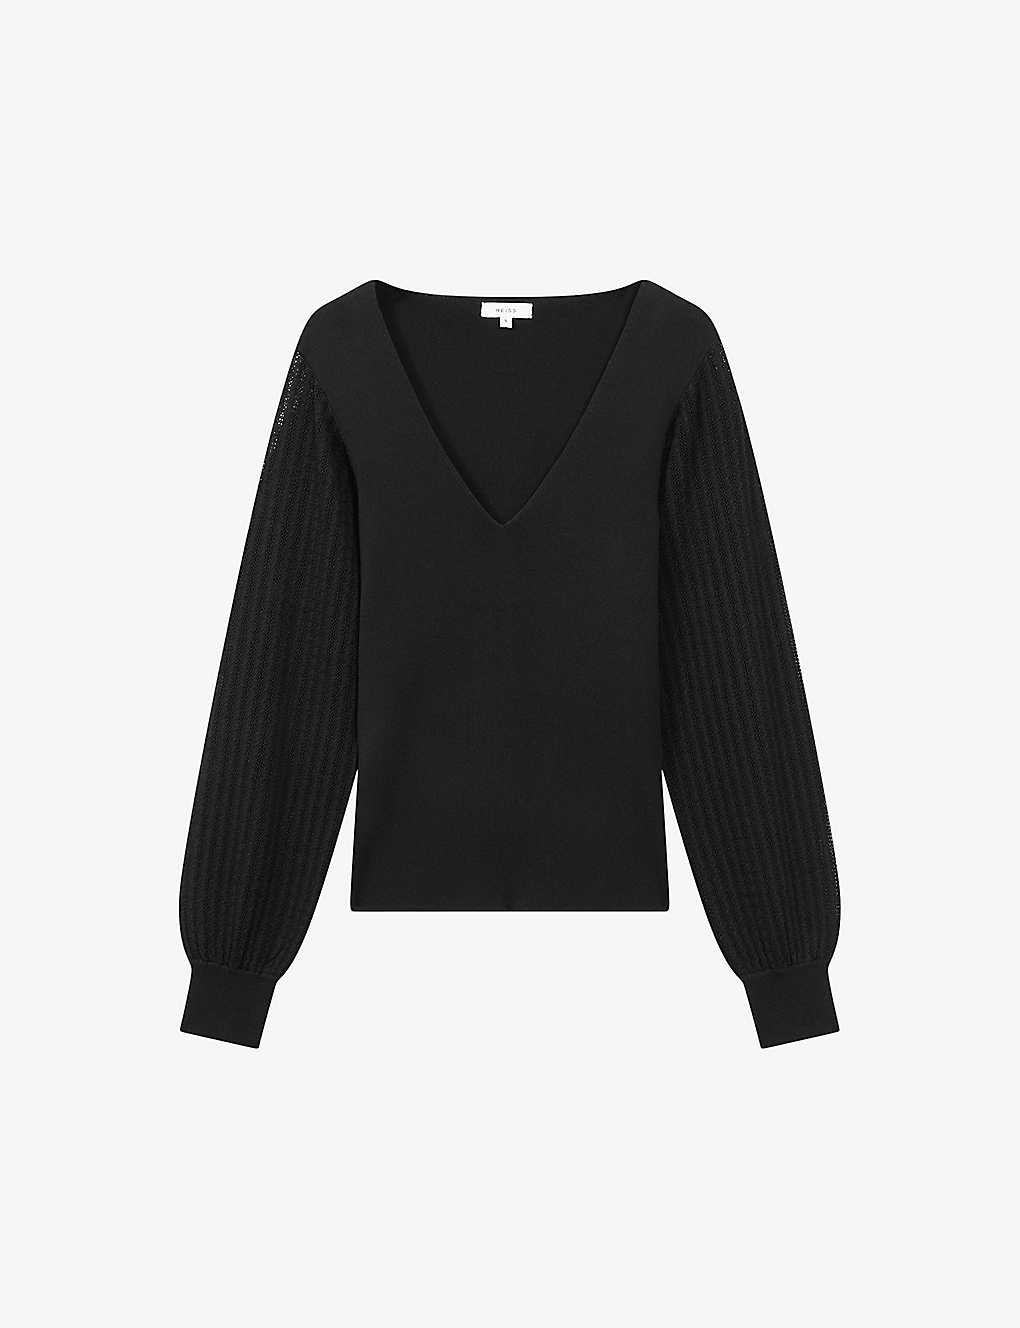 Reiss Lexi - Black Knitted Sleeve V-neck Top, S